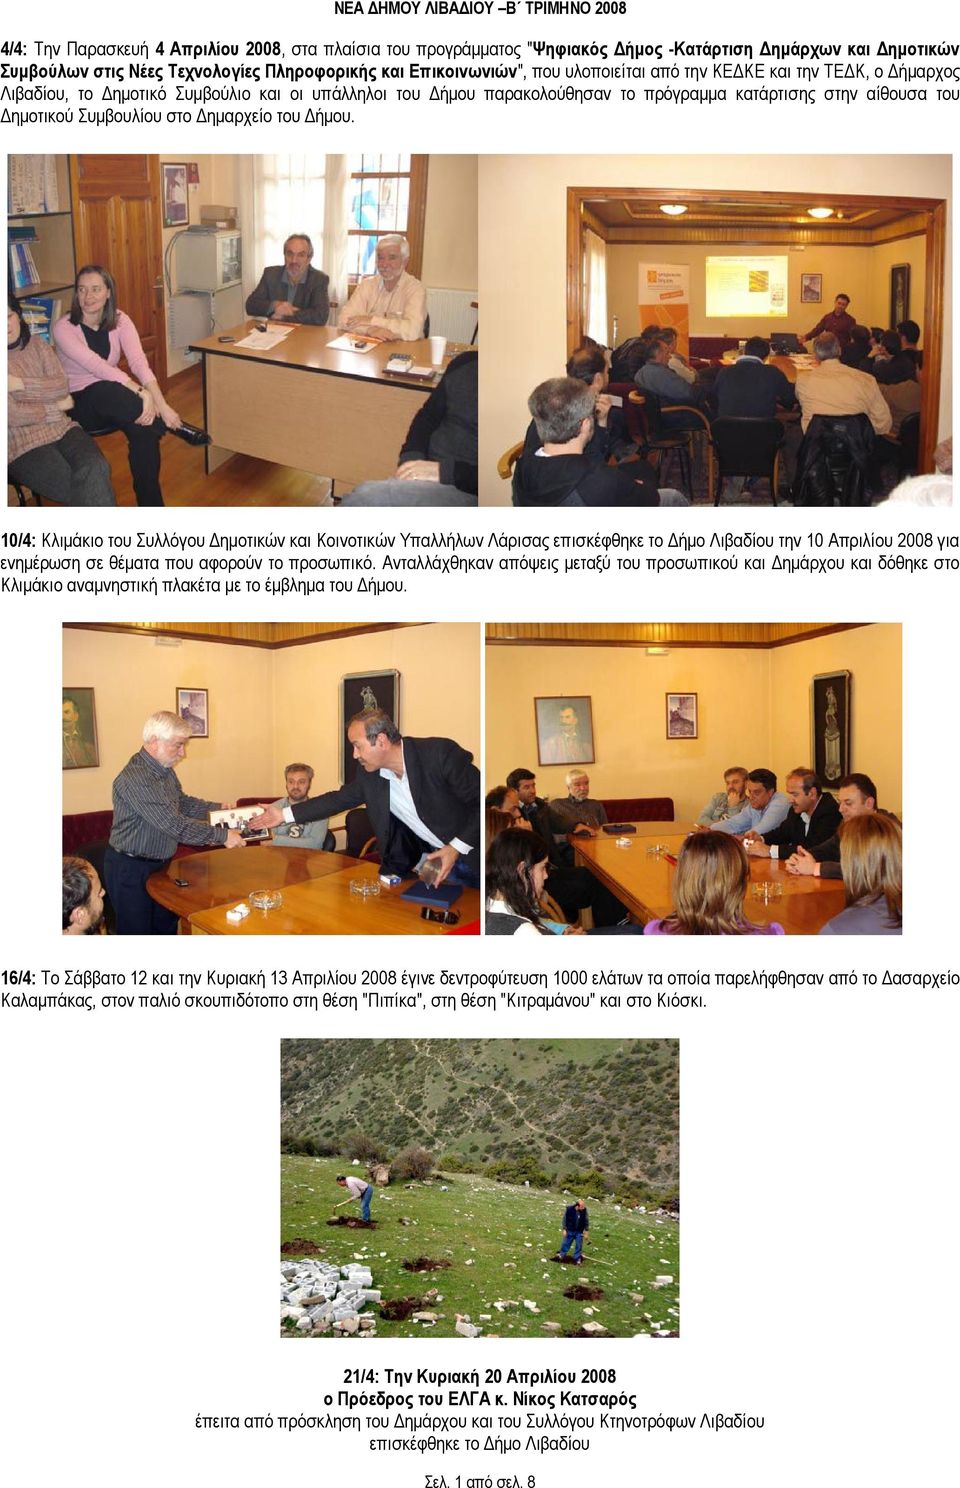 10/4: Κλιµάκιο του Συλλόγου ηµοτικών και Κοινοτικών Υπαλλήλων Λάρισας επισκέφθηκε το ήµο Λιβαδίου την 10 Απριλίου 2008 για ενηµέρωση σε θέµατα που αφορούν το προσωπικό.